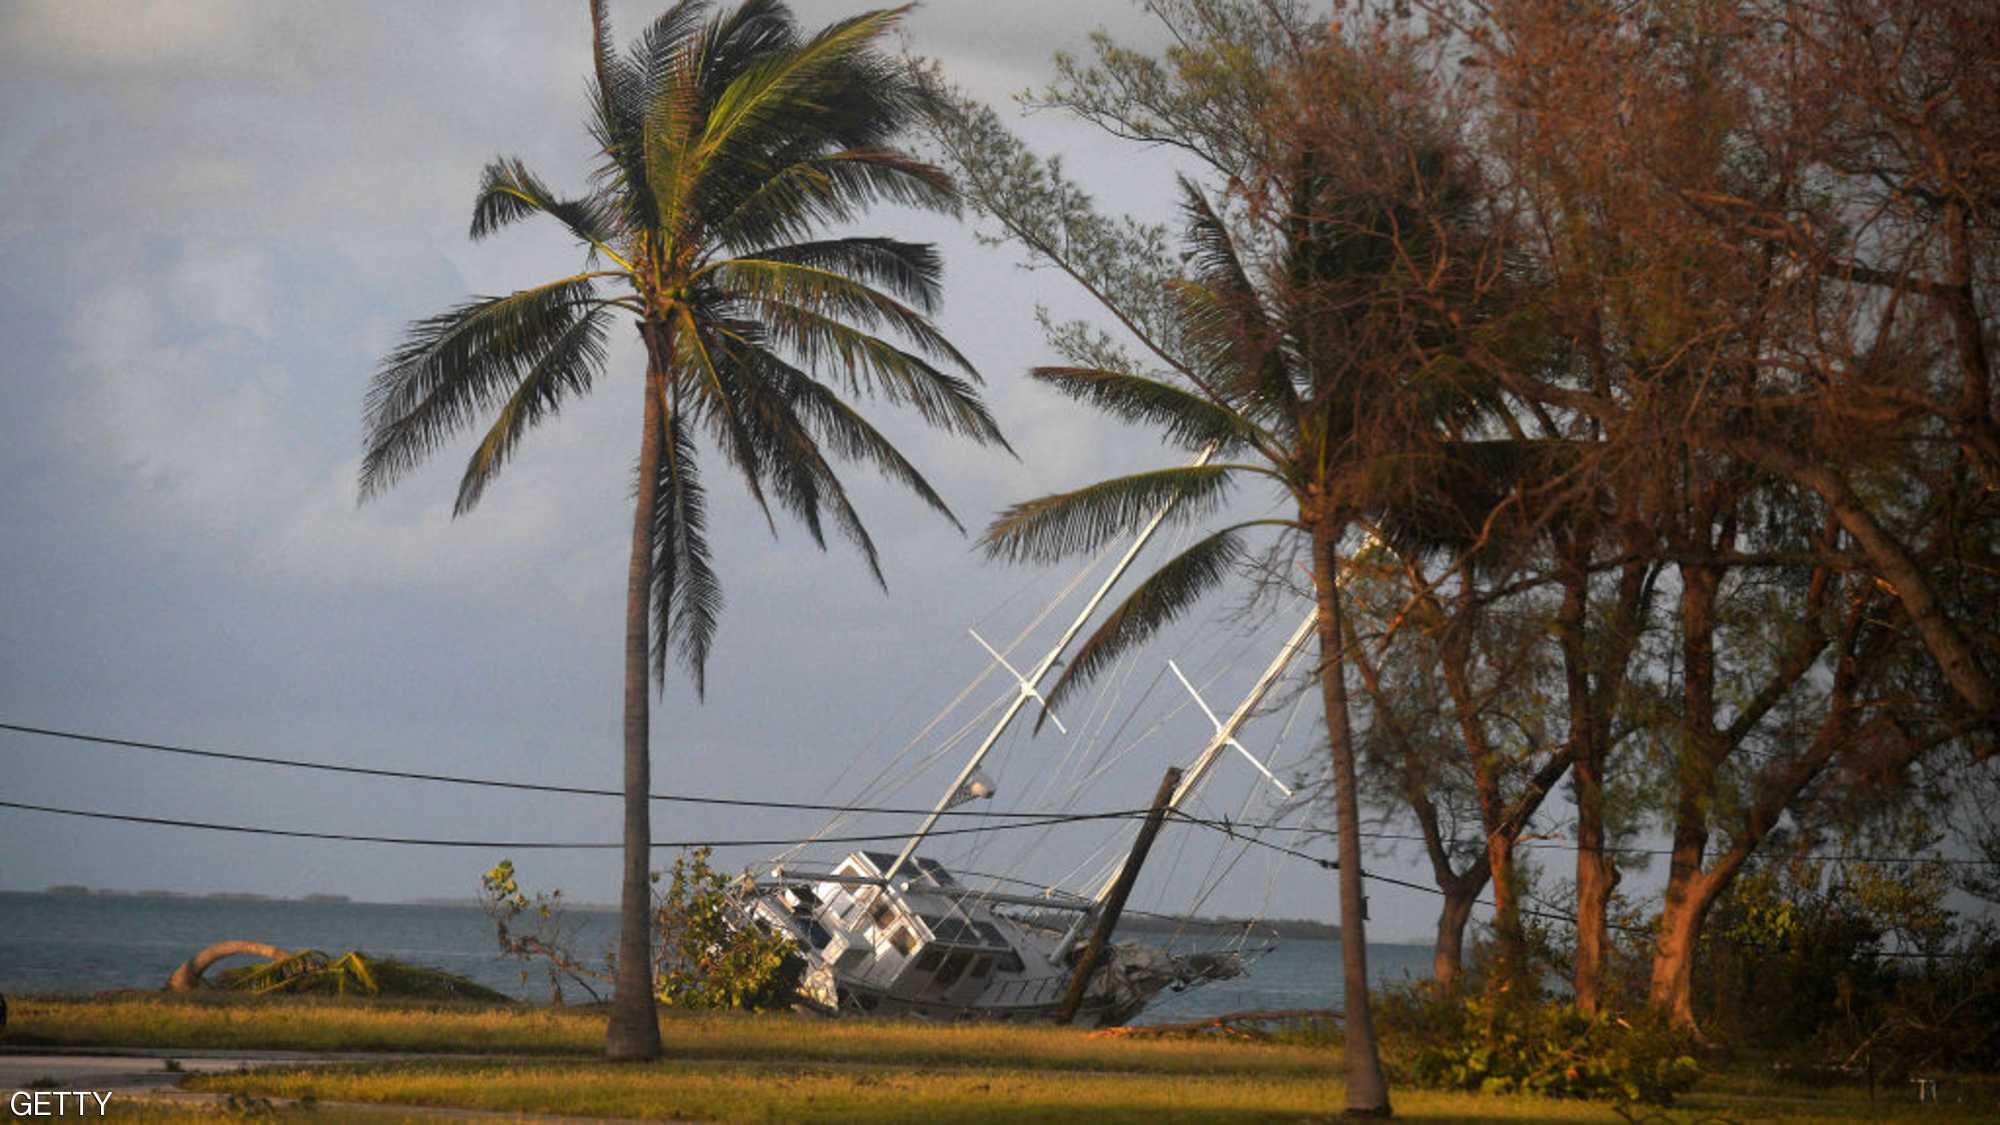 شاهد بالصور: فلوريدا بعد إعصار إيرما